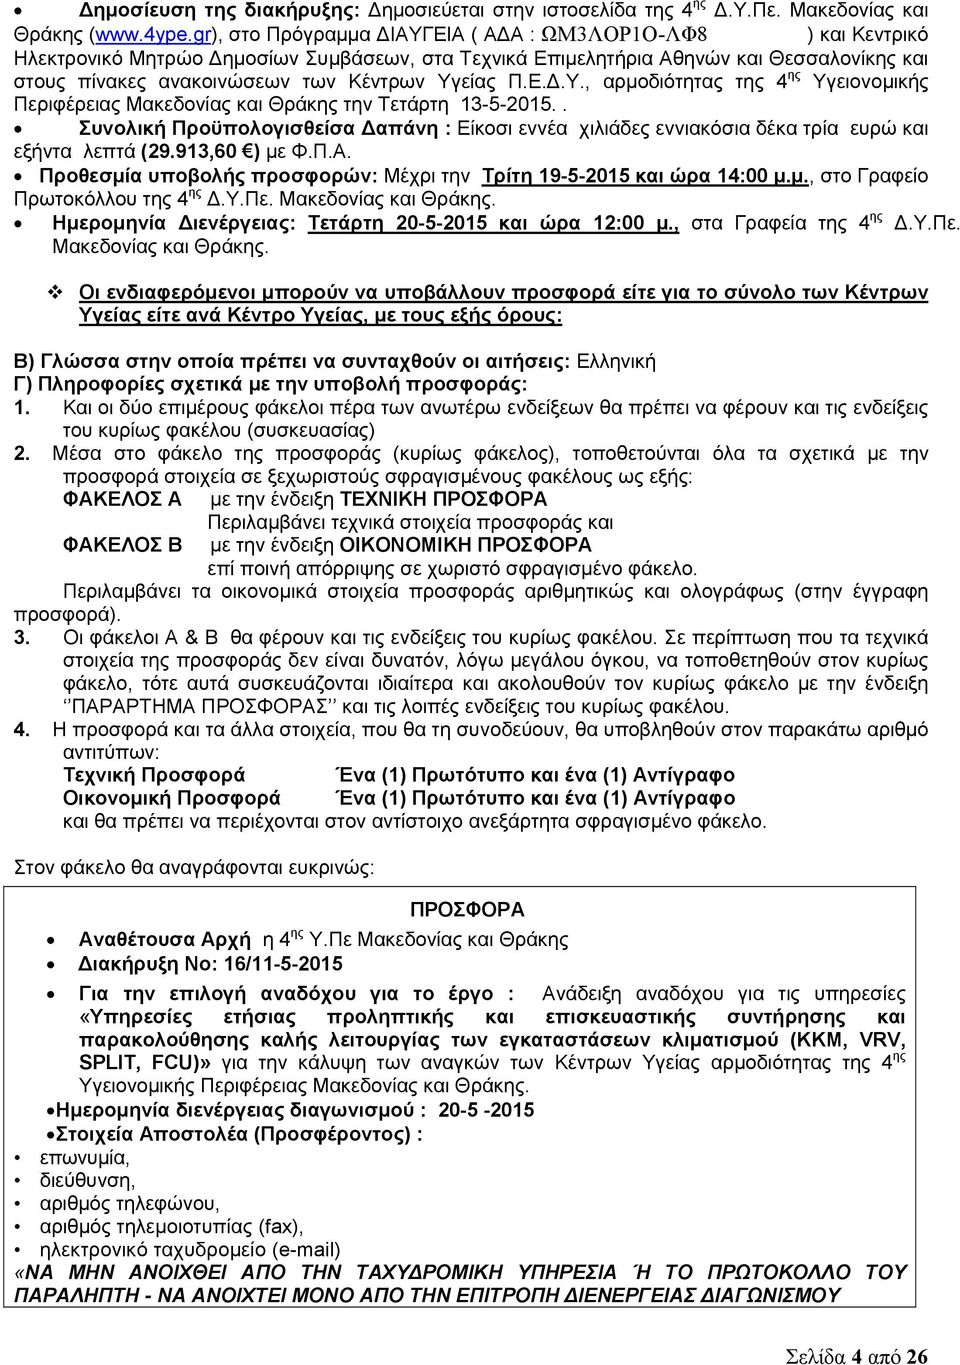 Υγείας Π.Ε.Δ.Υ., αρμοδιότητας της 4 ης Υγειονομικής Περιφέρειας Μακεδονίας και Θράκης την Τετάρτη 13-5-2015.